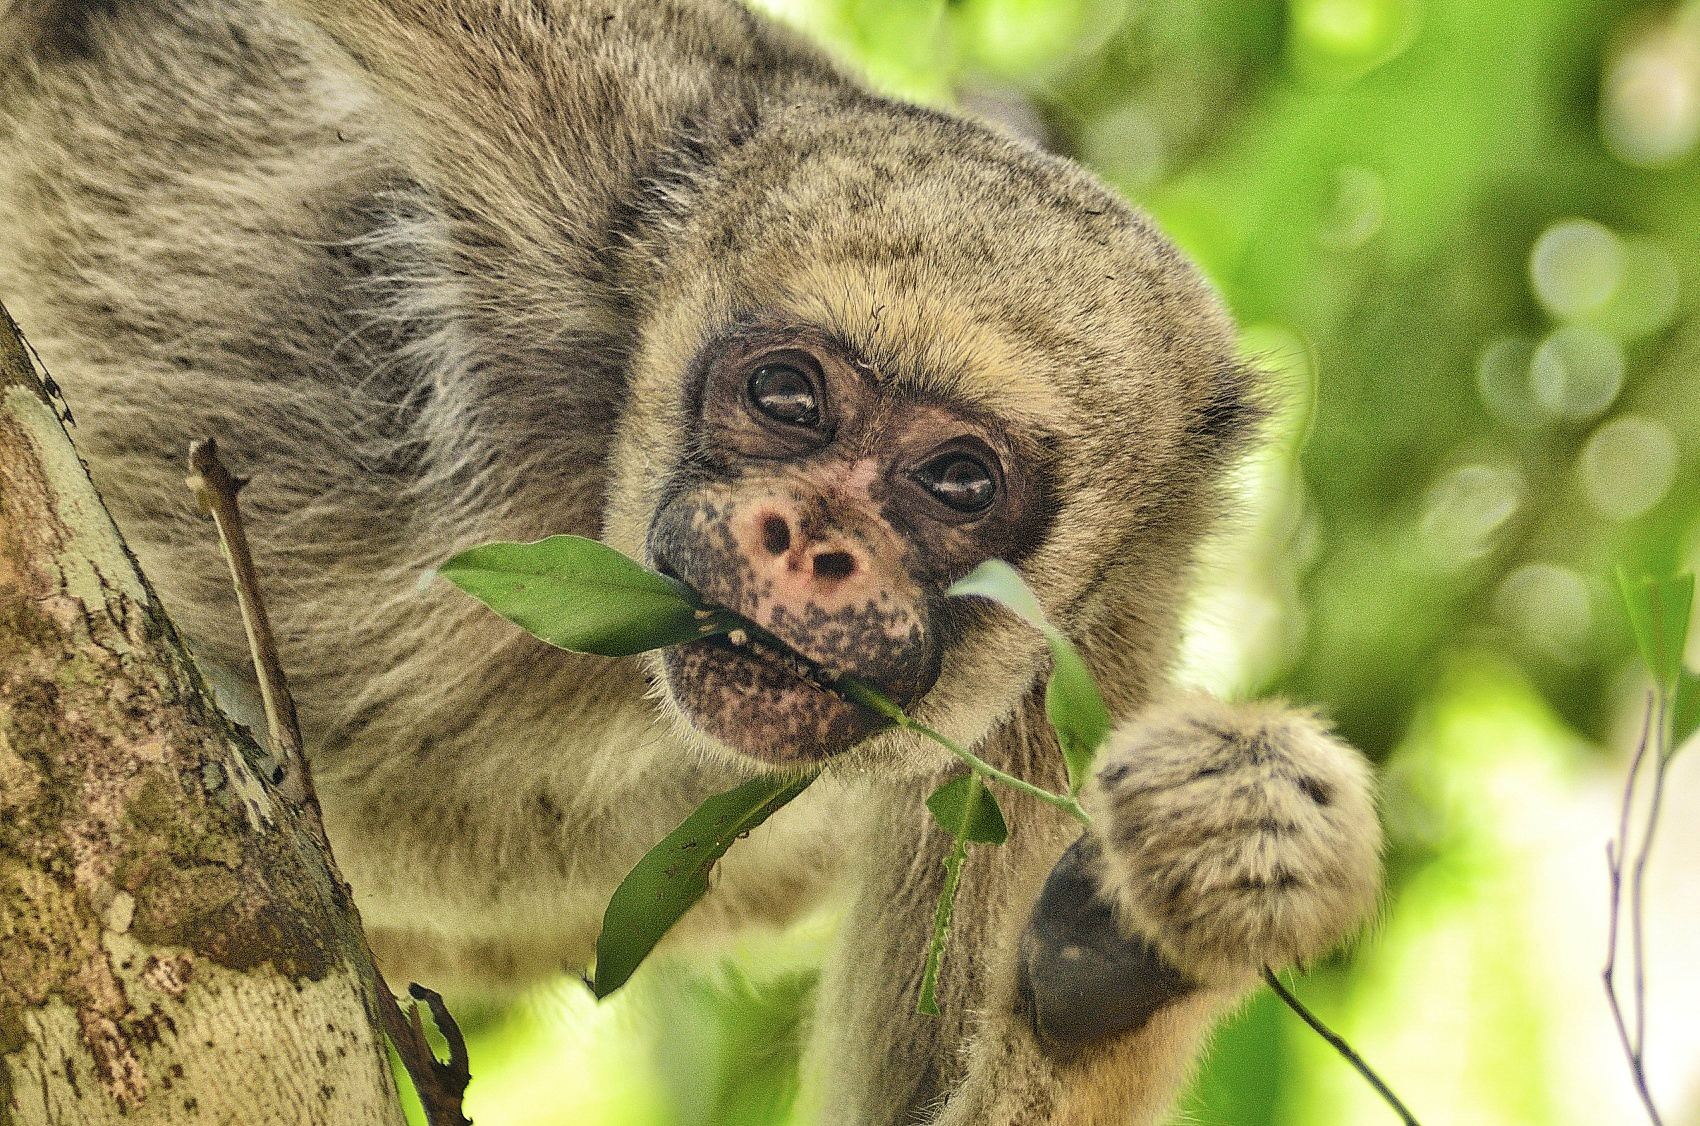 Mono araña muriqui come unas hojas